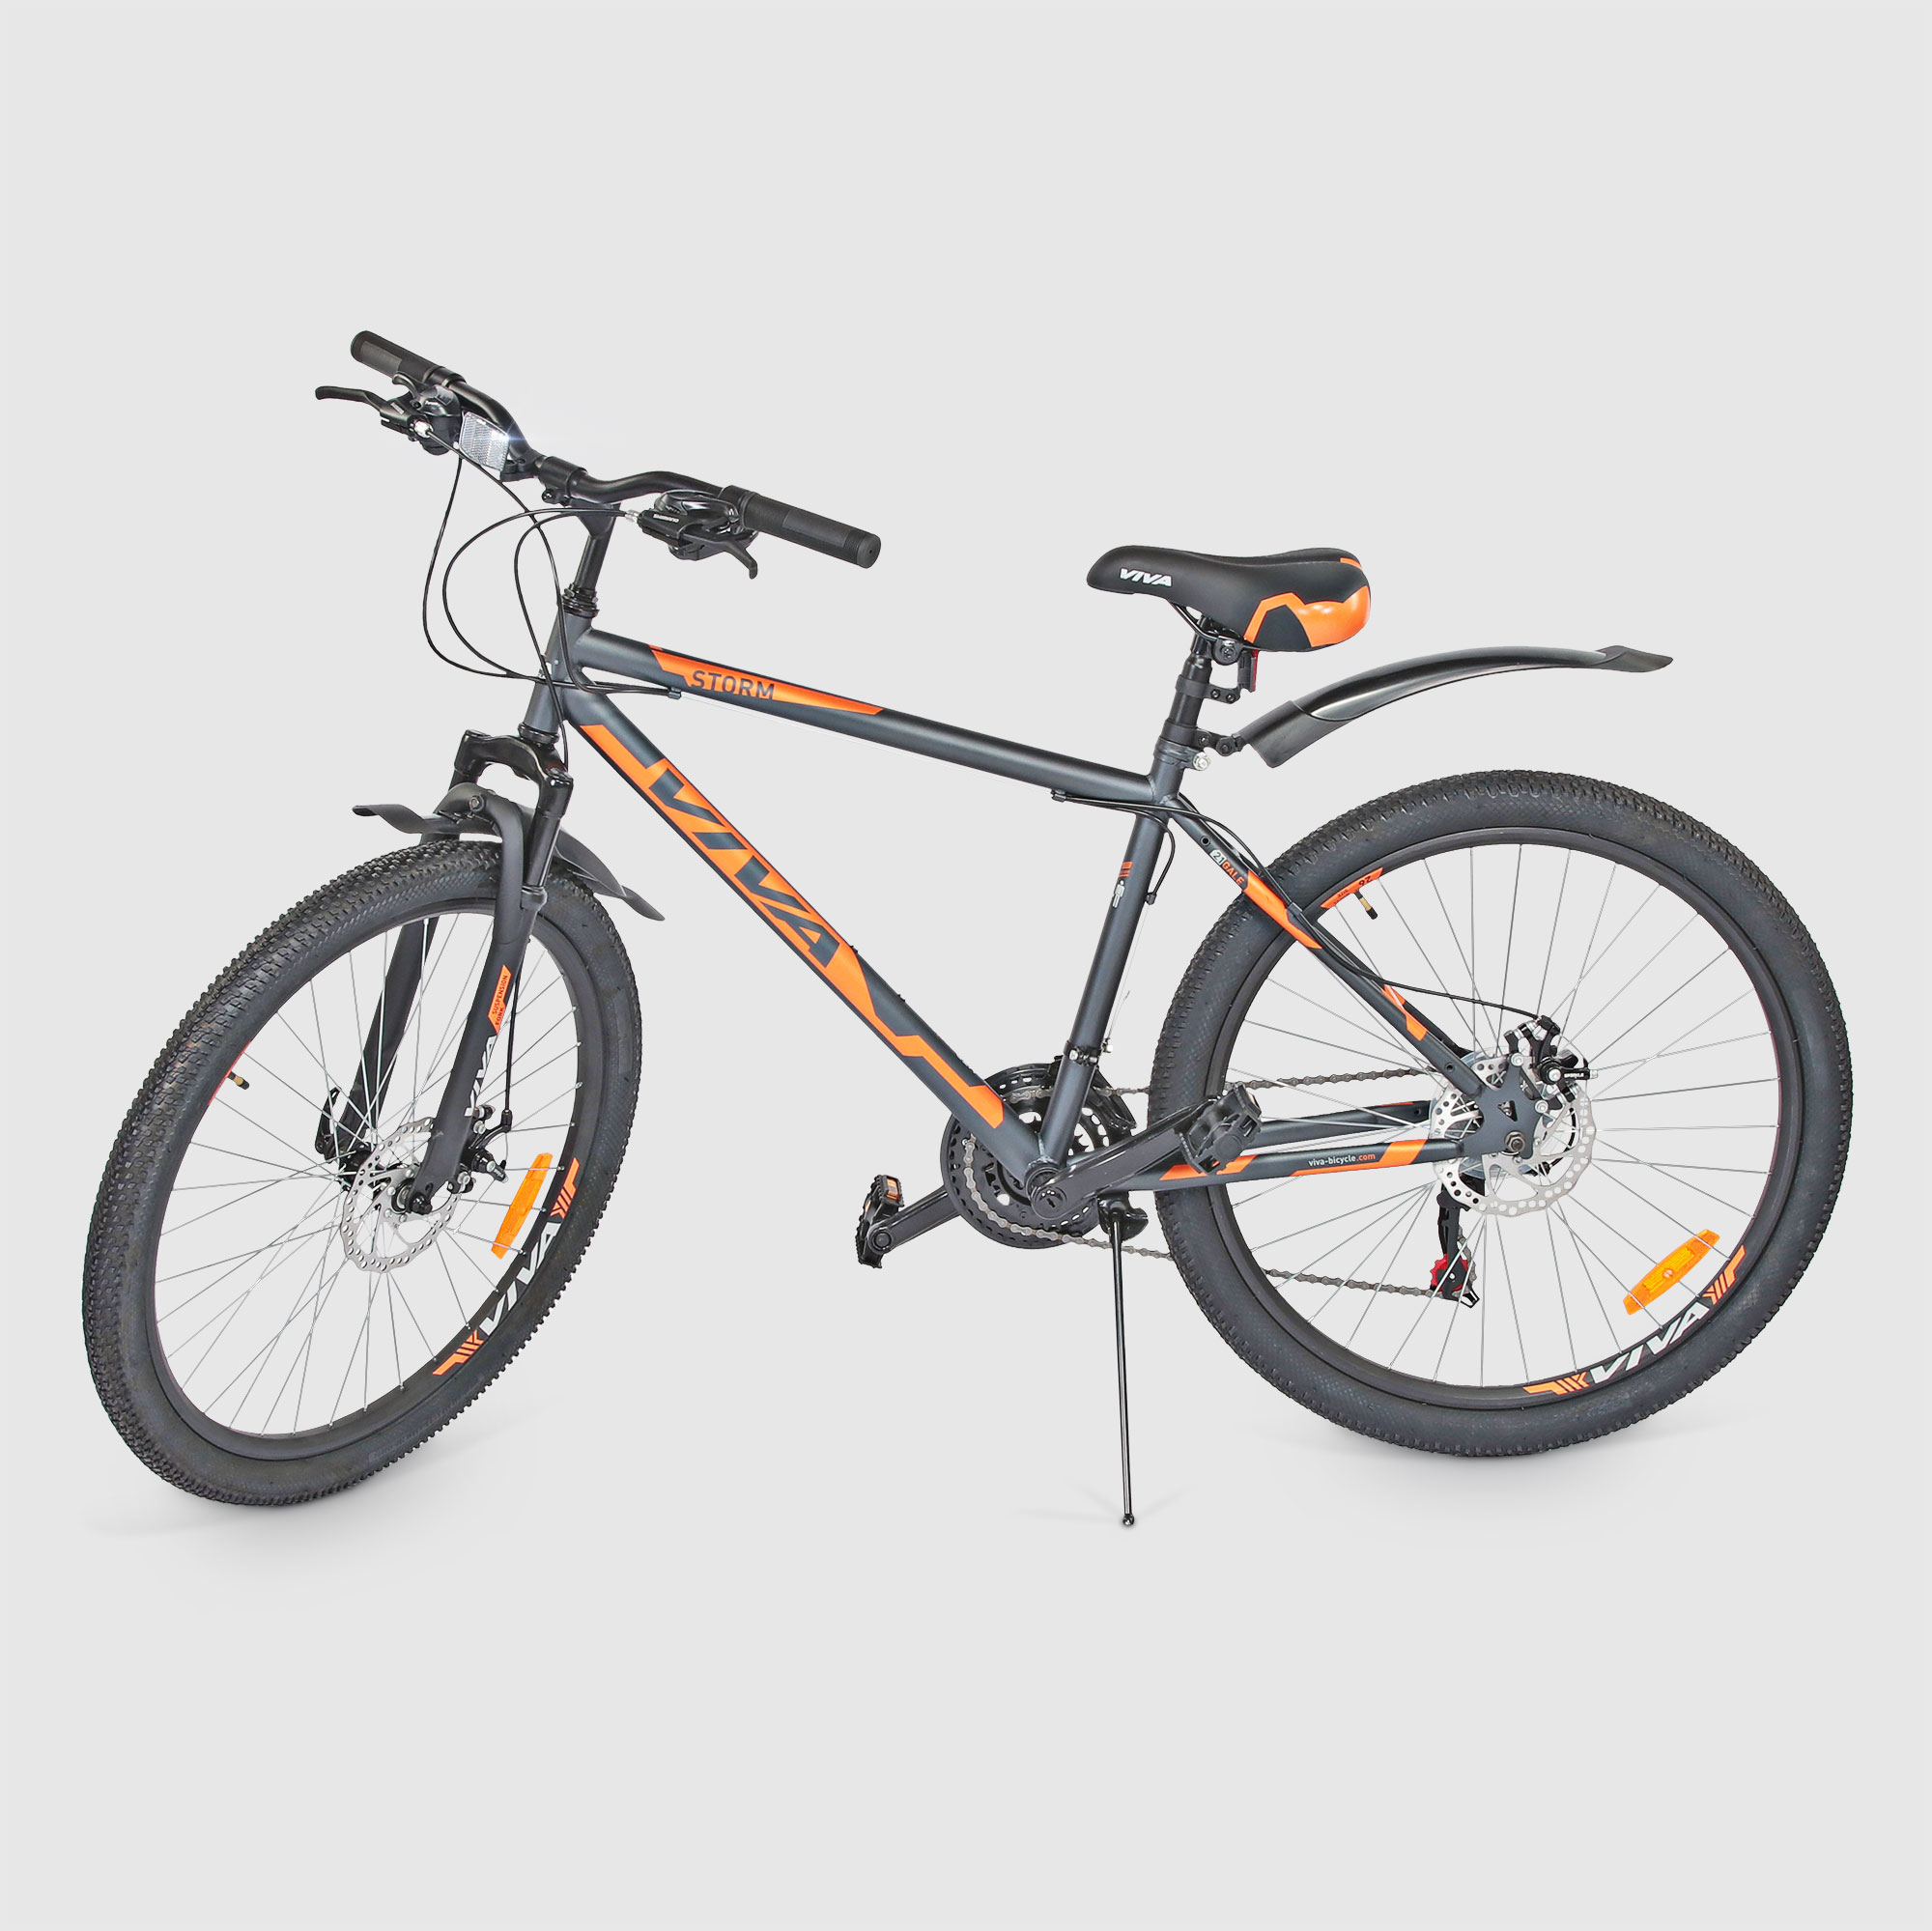 Велосипед горный VIVA Storm 180D, 21 скорость, диаметр колес 26, стальная рама, оранжевый велосипед горный viva storm 180d 21 скорость диаметр колес 26 стальная рама оранжевый